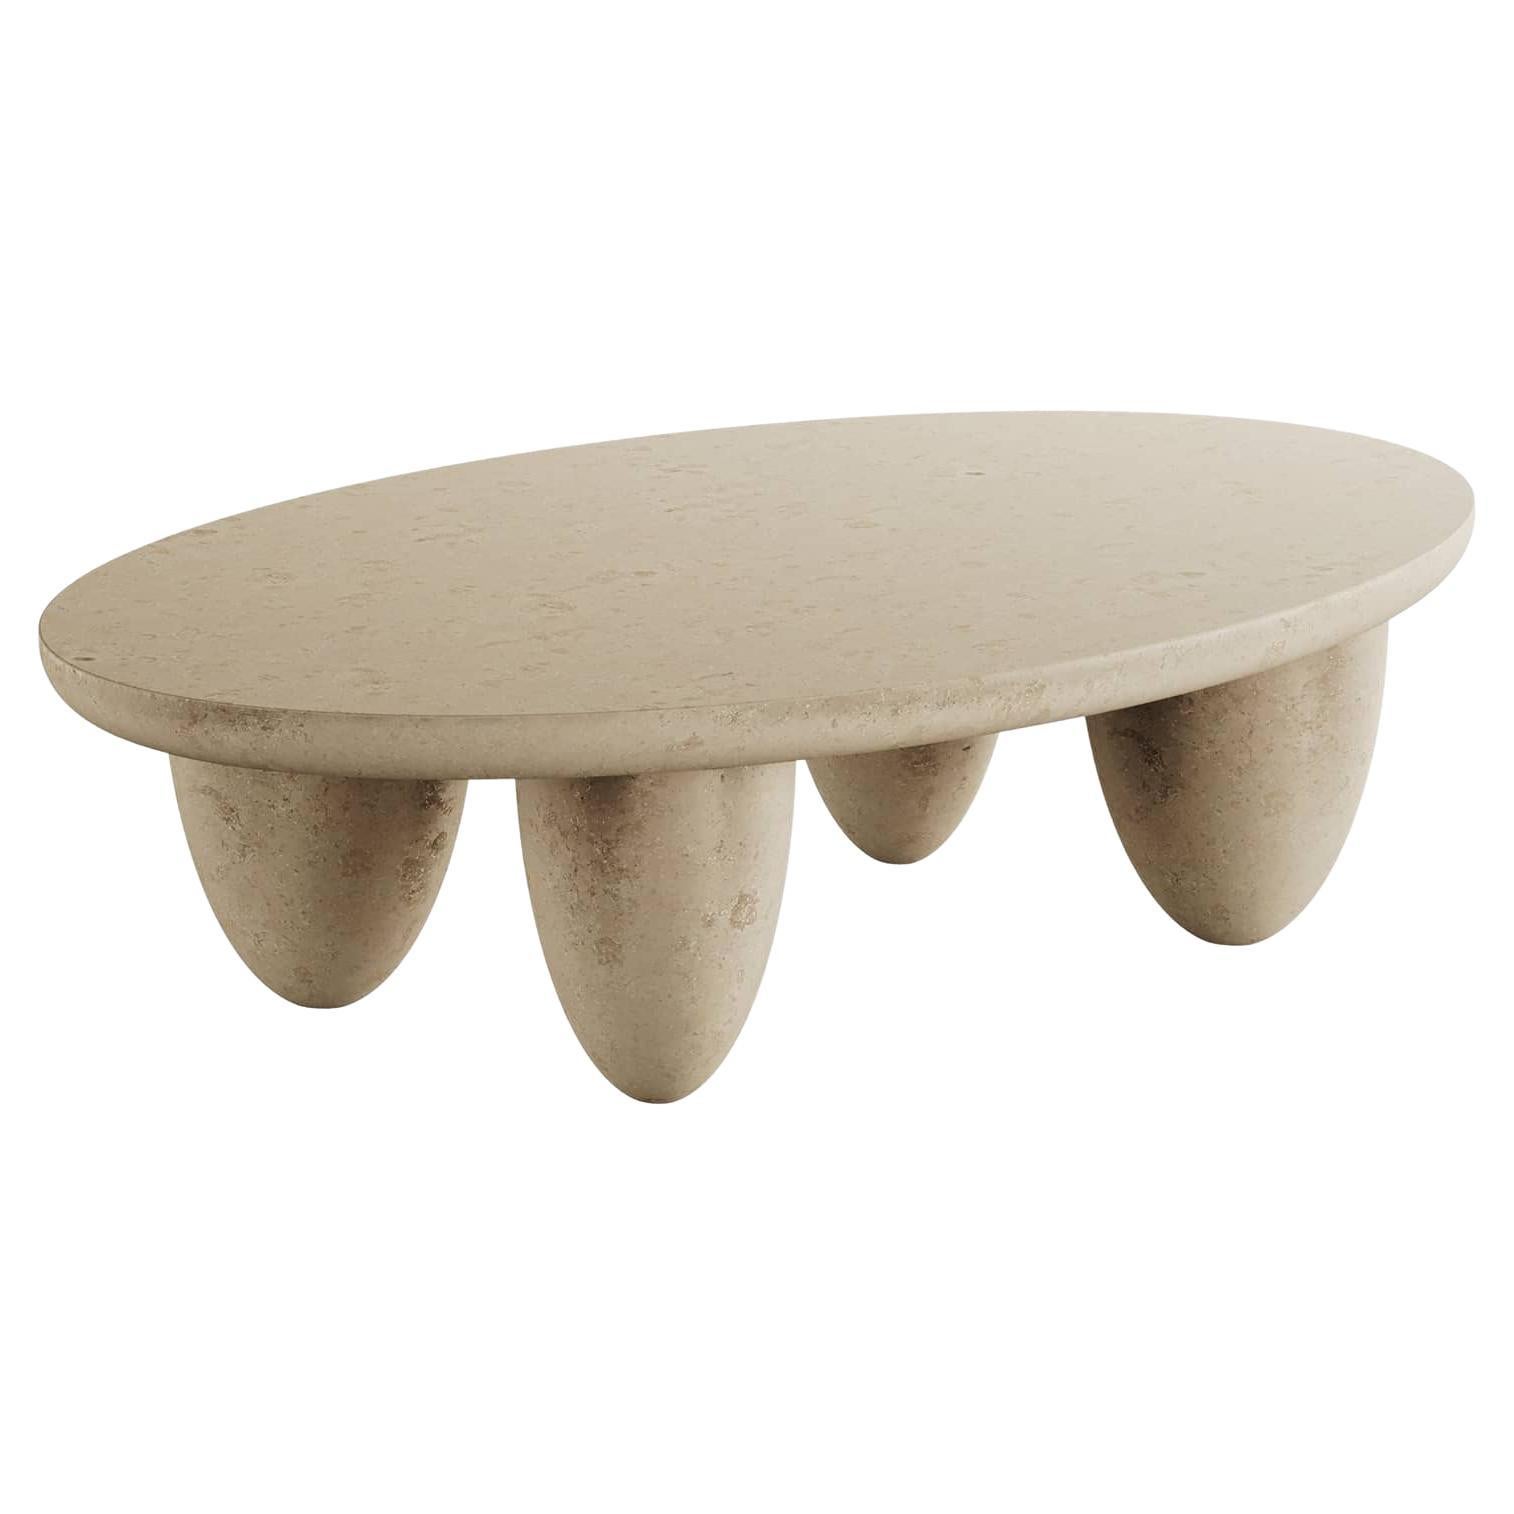 Table basse ovale contemporaine minimaliste pour l'extérieur et l'intérieur Beige naturel pierre calcaire